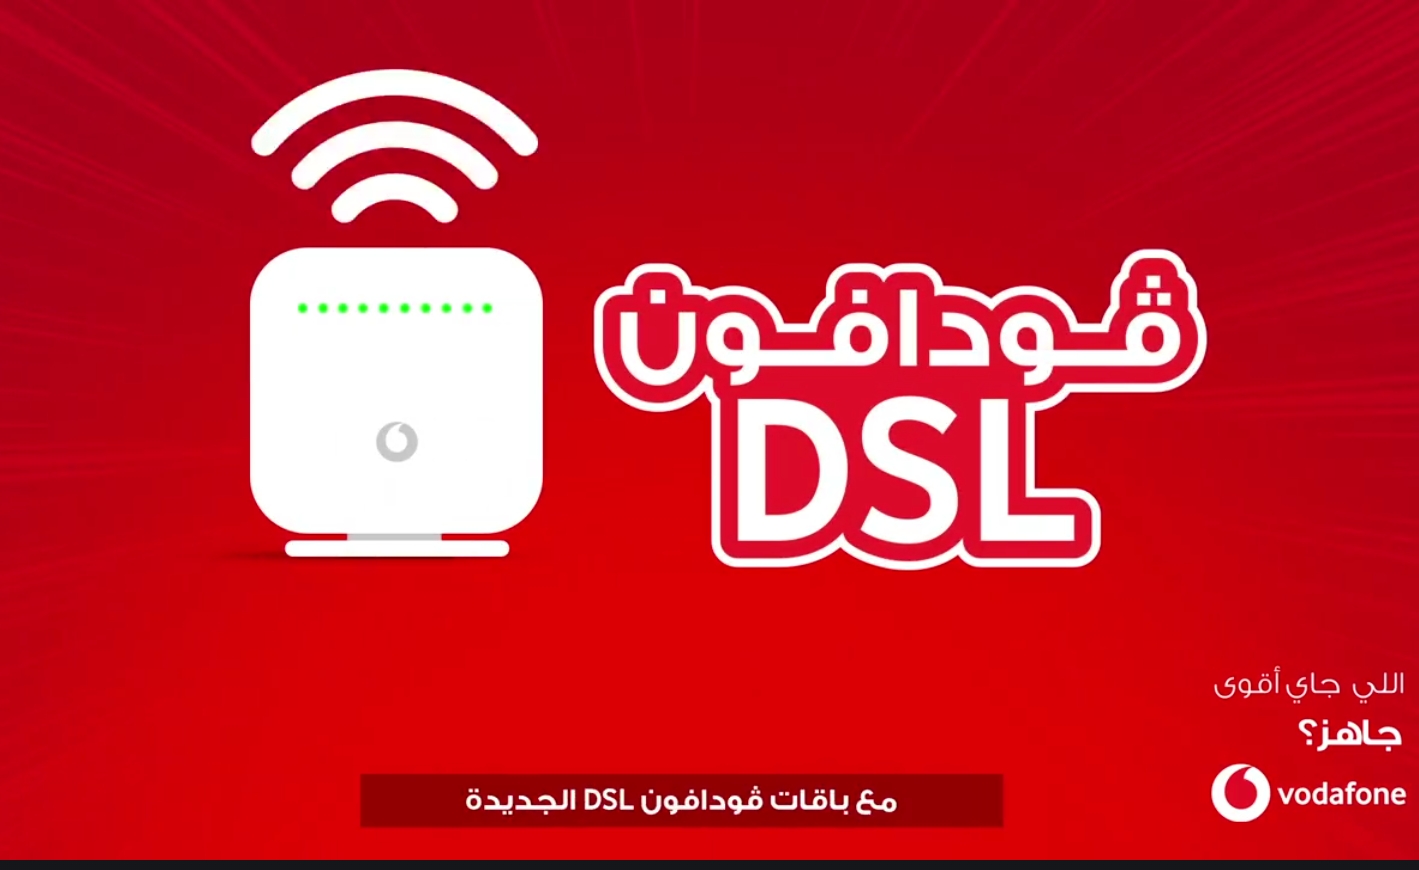 باقات DSL للانترنت المنزلي الجديد من فودافون